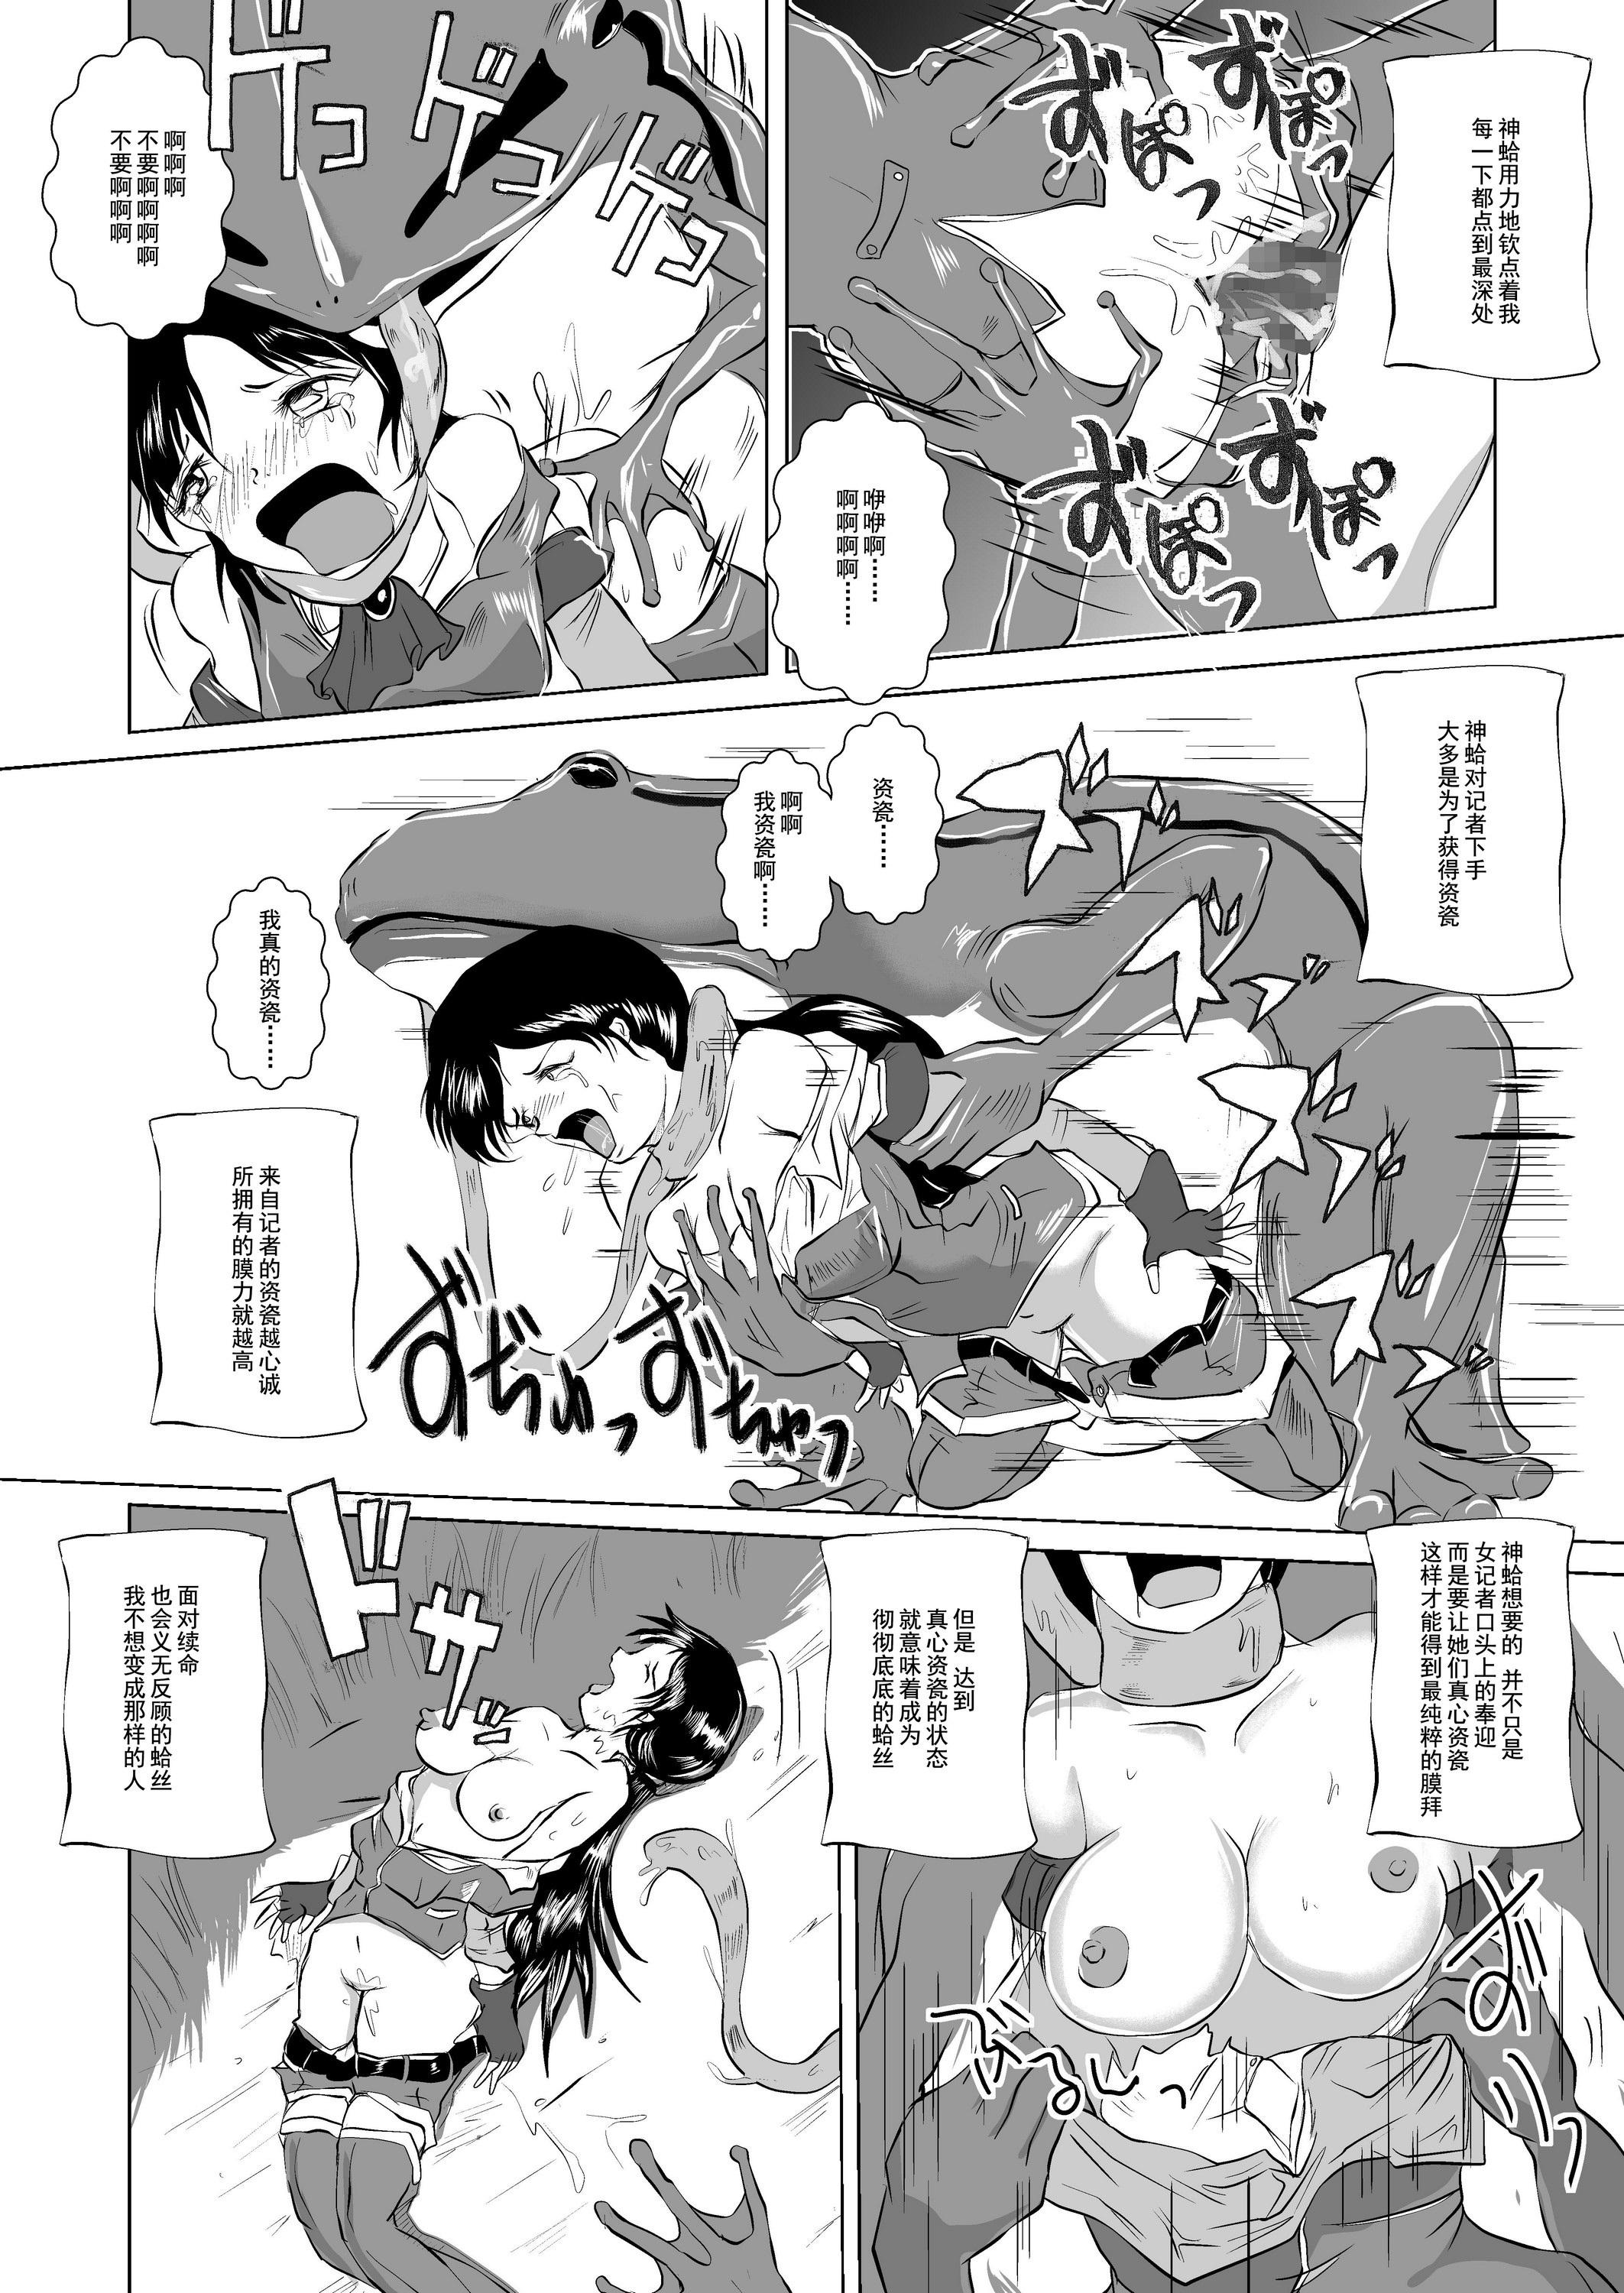 Hot Sluts Marunomi Hakusho Kaeru no Harayome Tattoos - Page 10